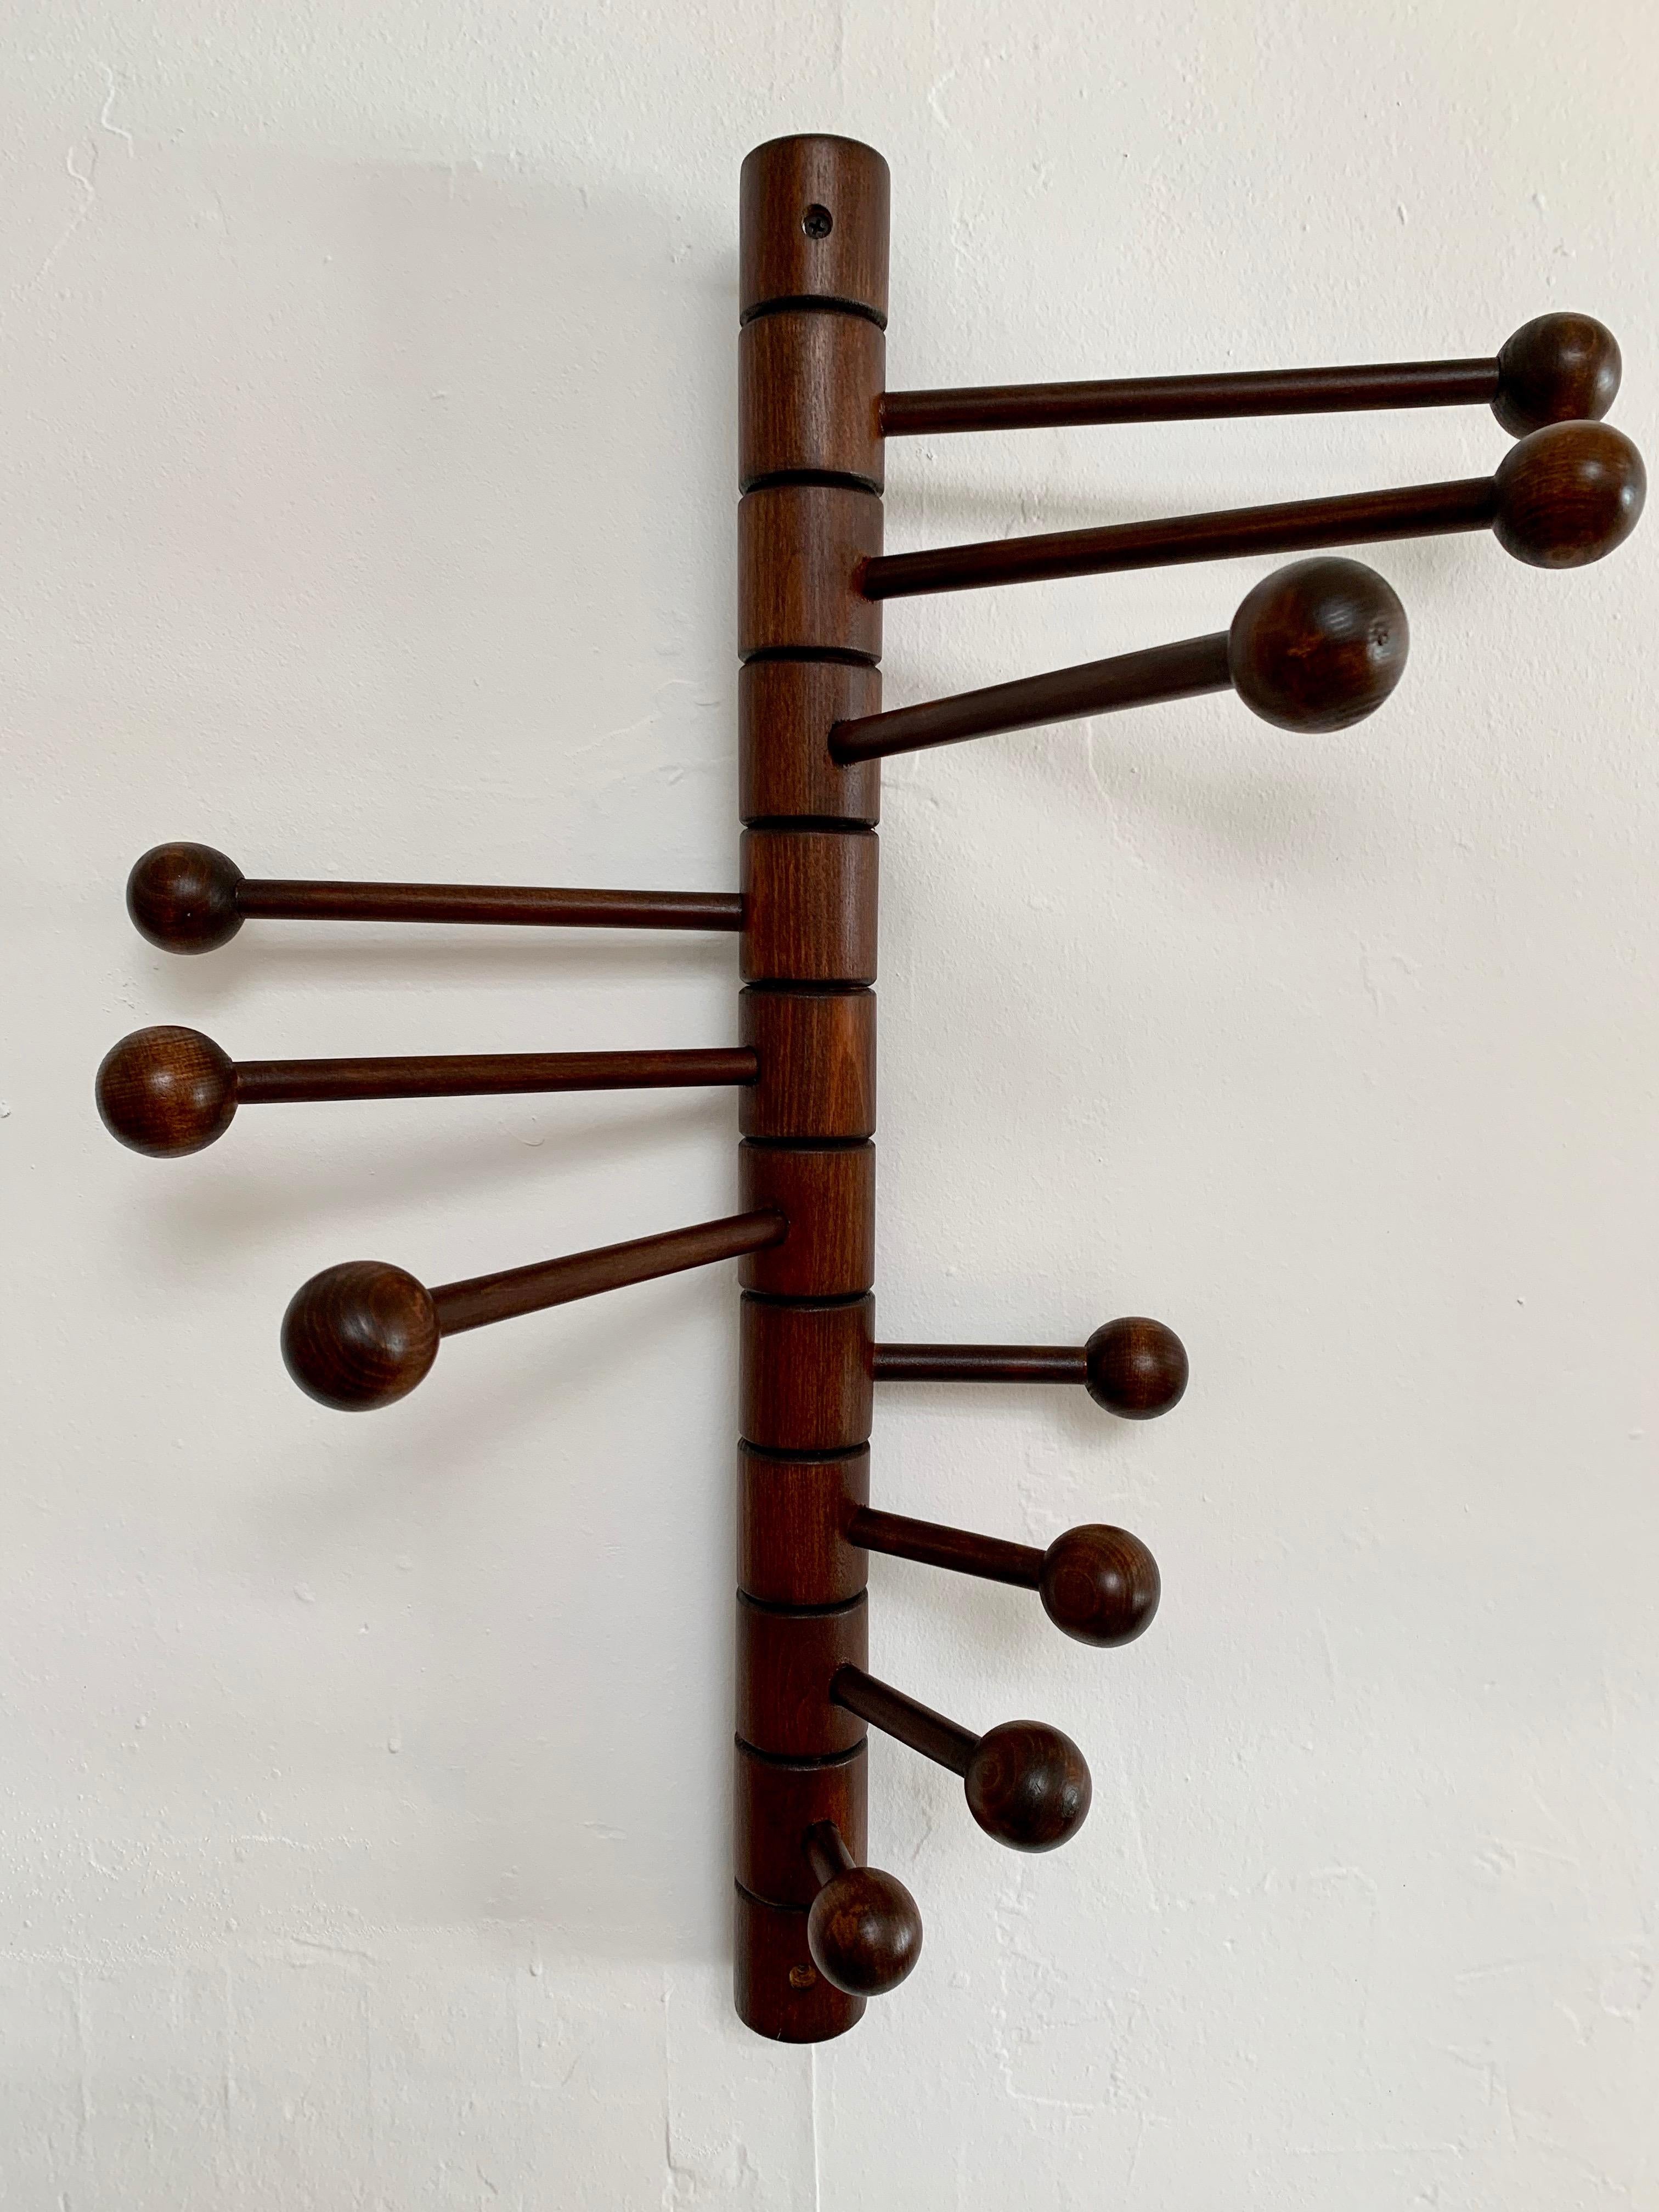 Wood Articulating Coat Rack by Merit, Los Angeles